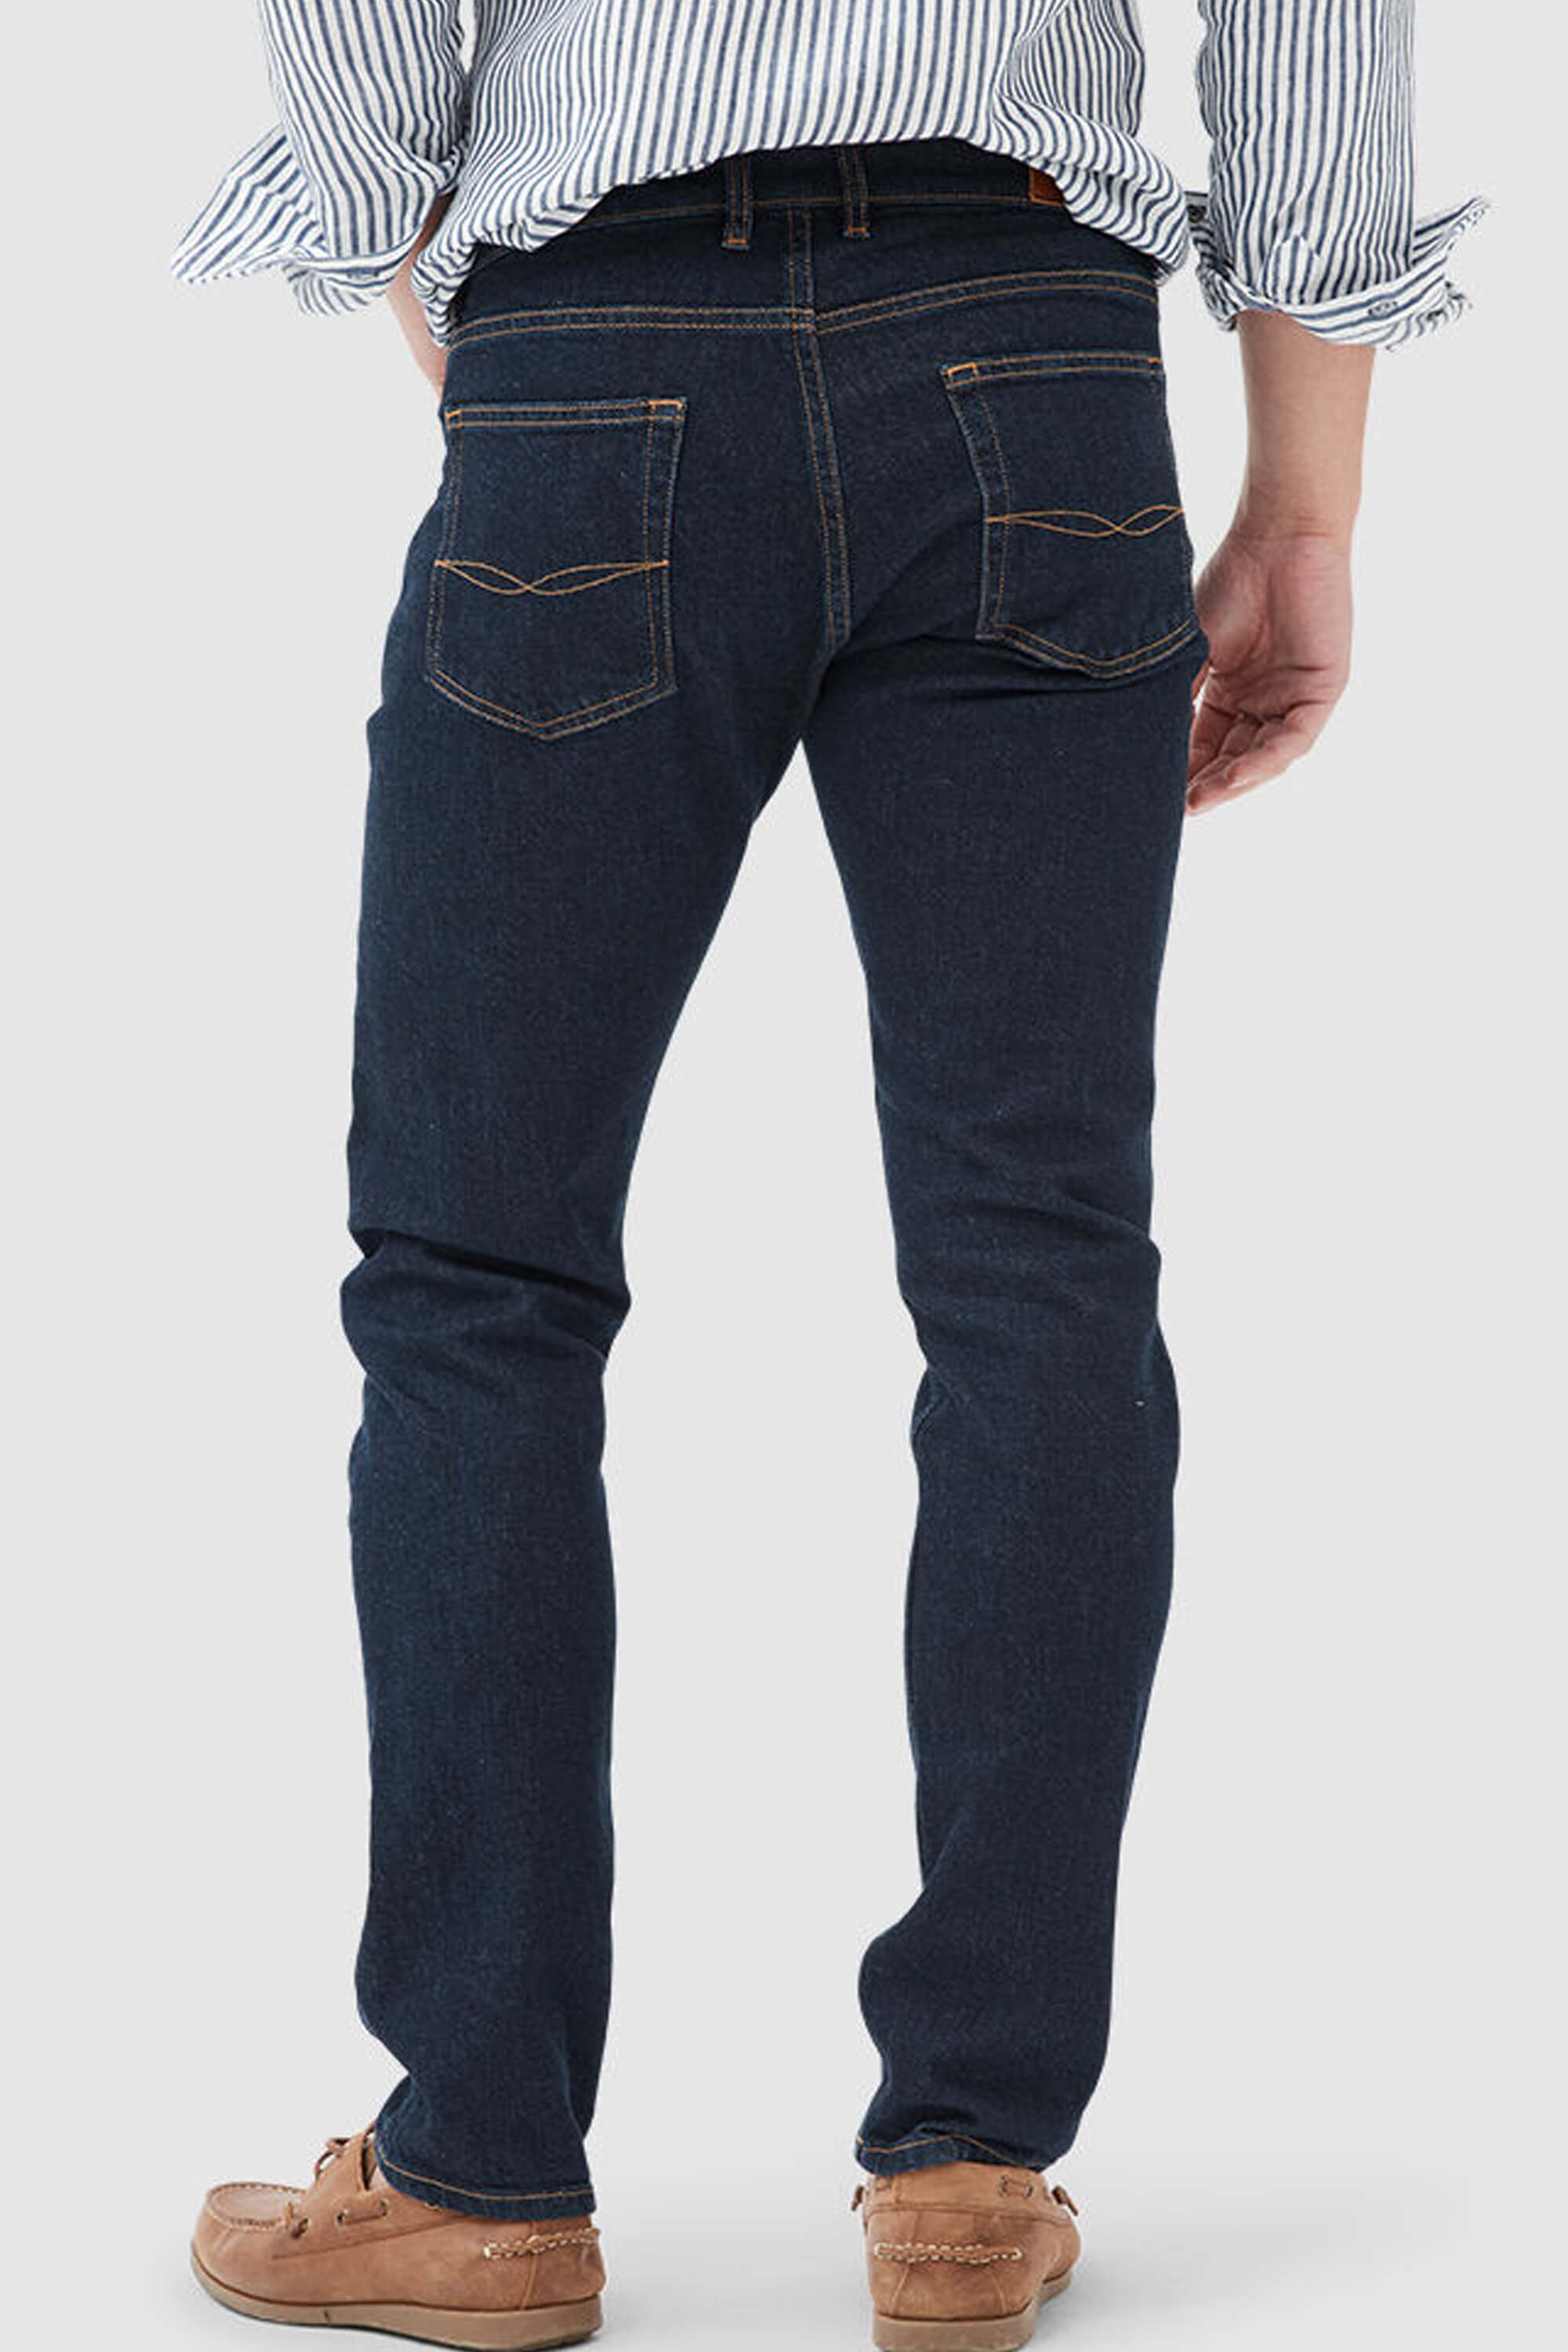 Rodd & Gunn Sutton Jeans